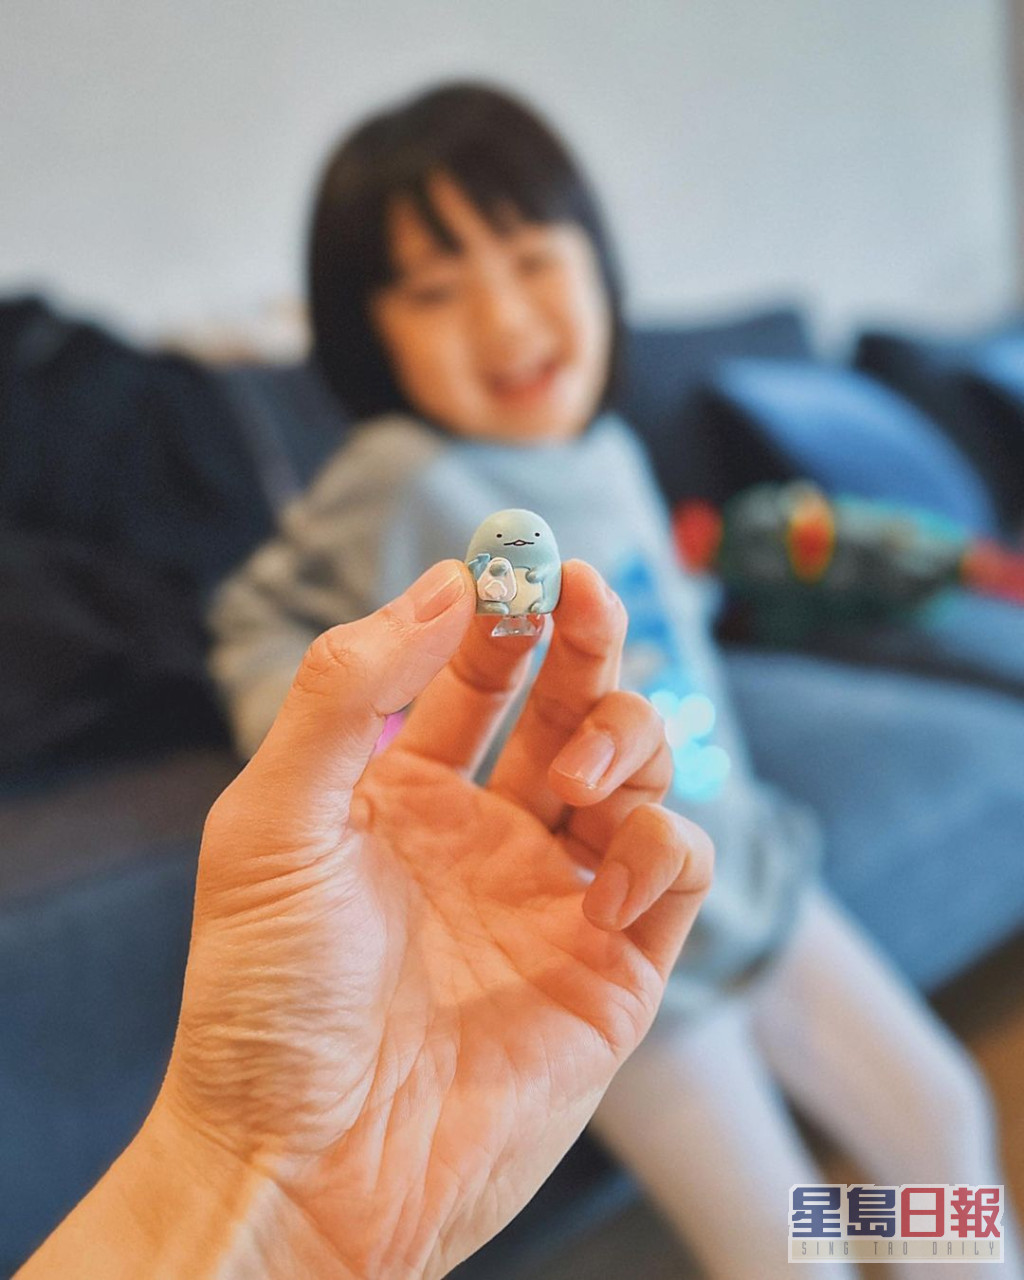 周柏豪分享爱女与玩具的合照，网民大赞囡囡可爱。